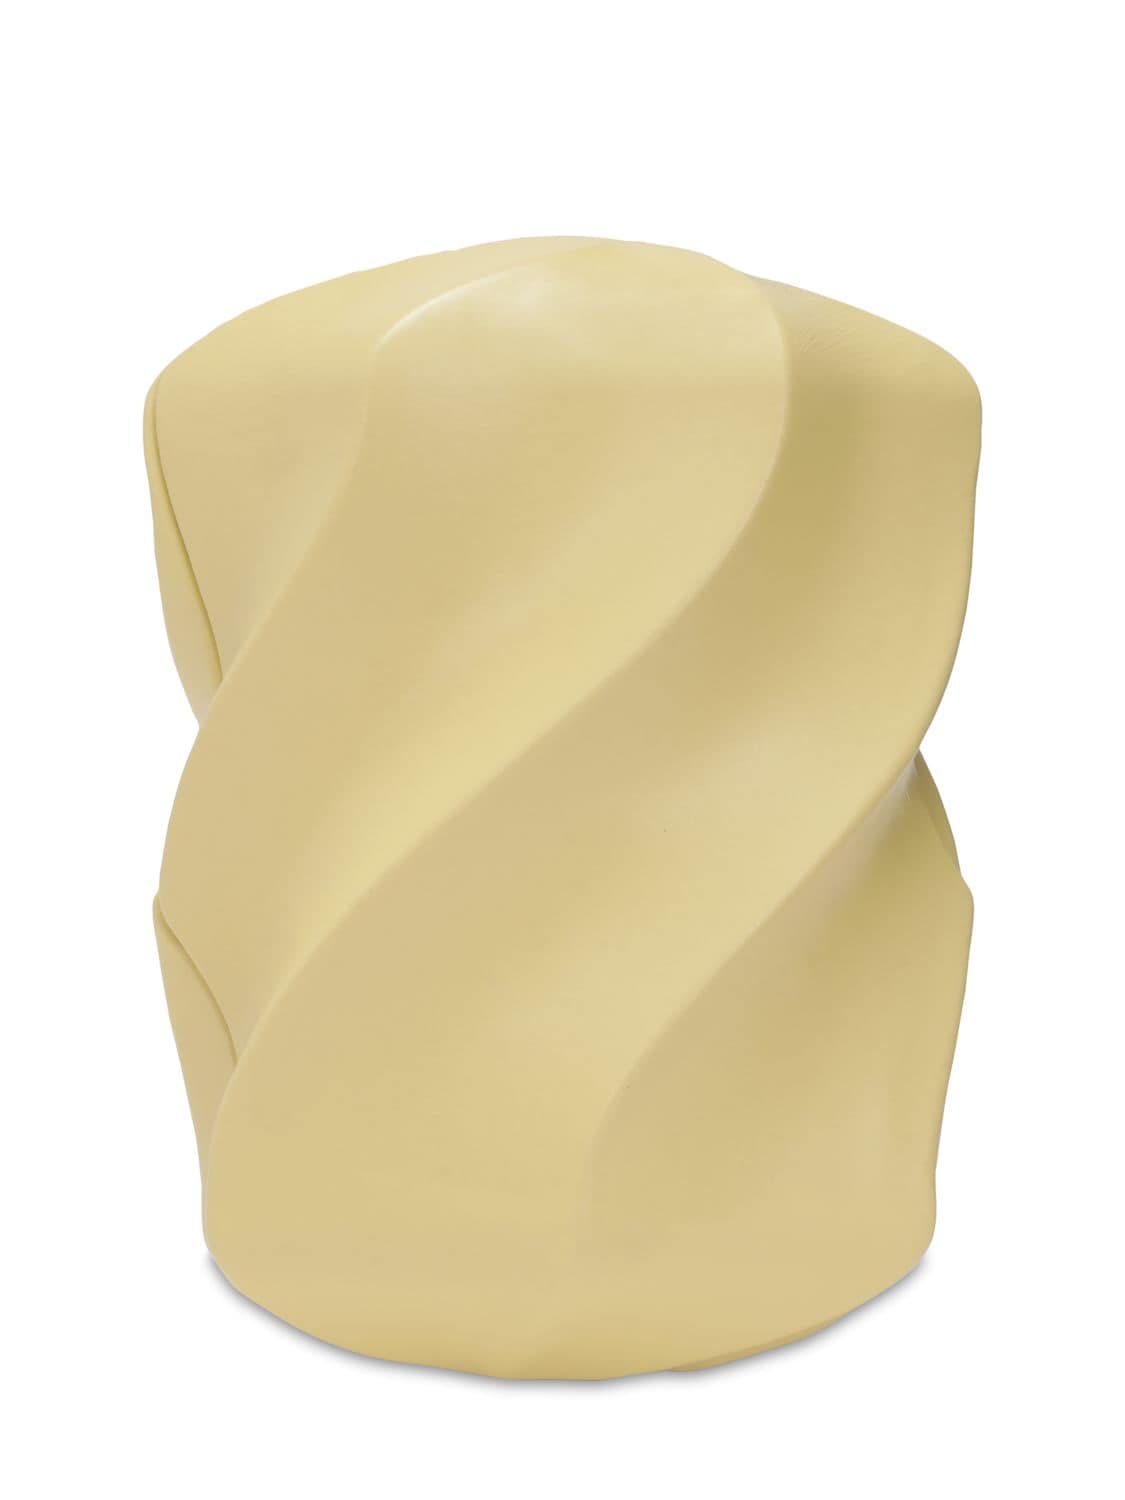 Bottega Veneta Paper Calf Leather Clutch In Butter Gold